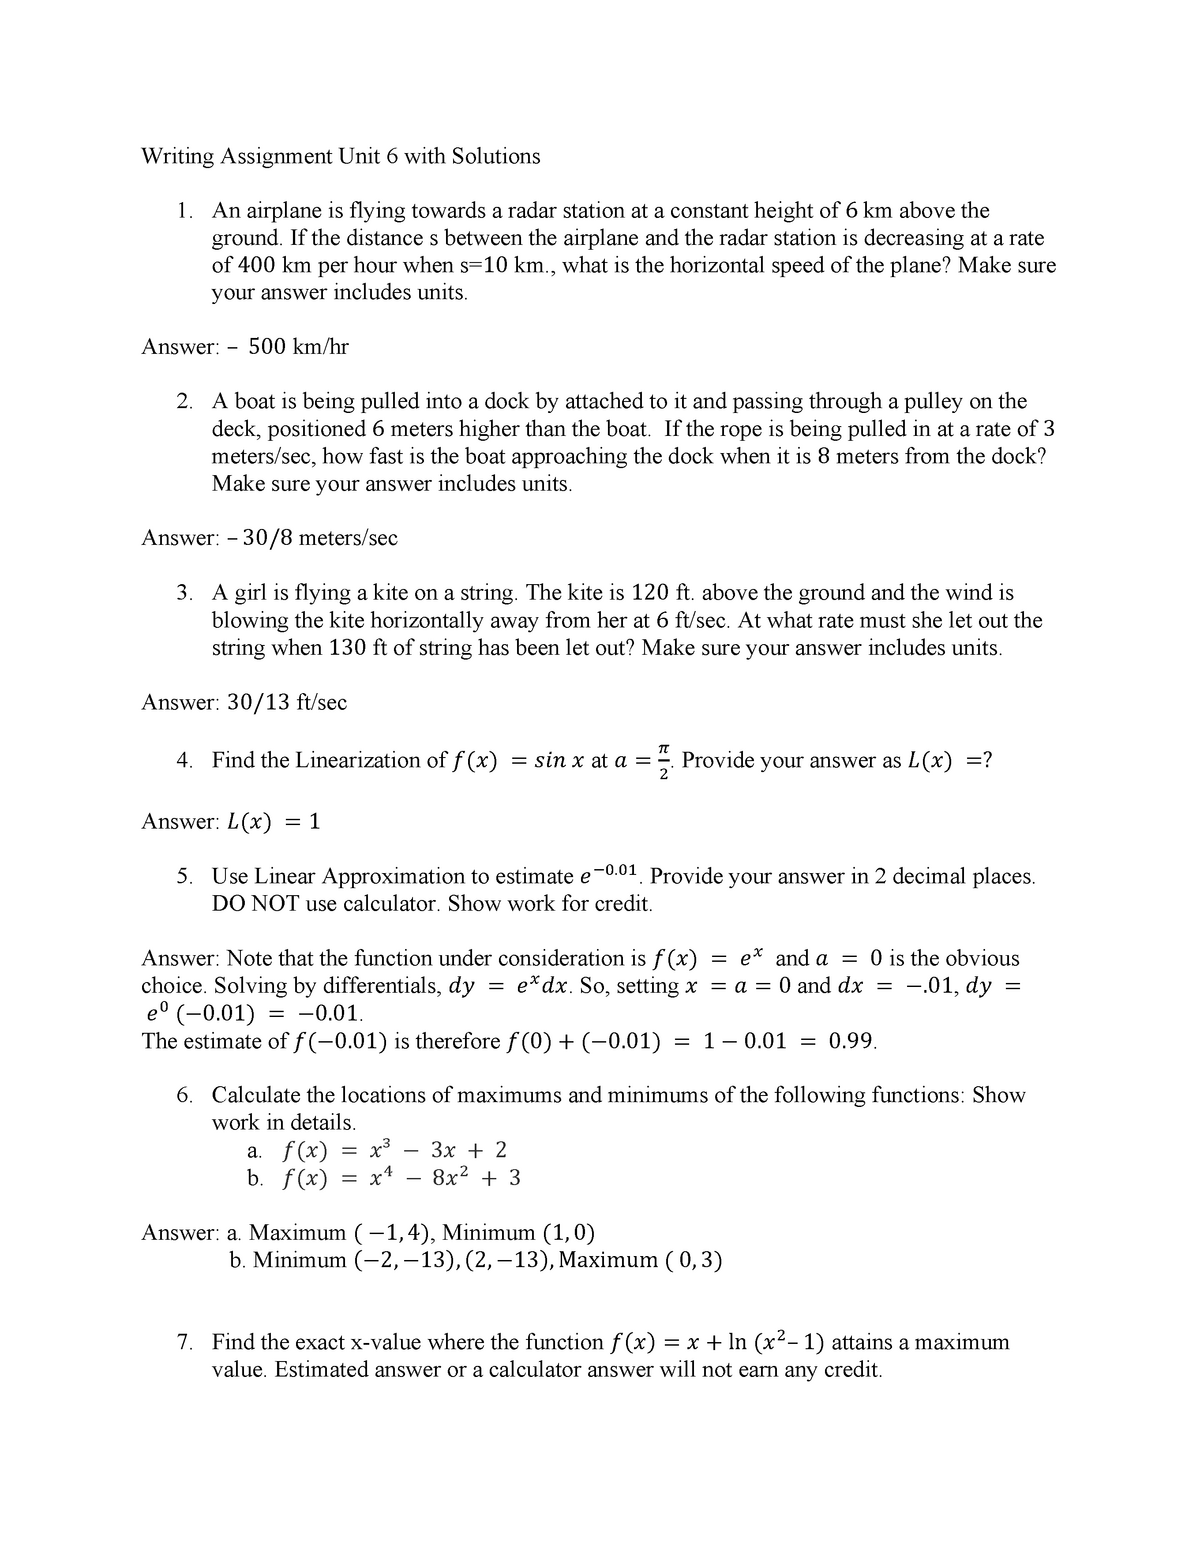 math 1211 written assignment unit 6